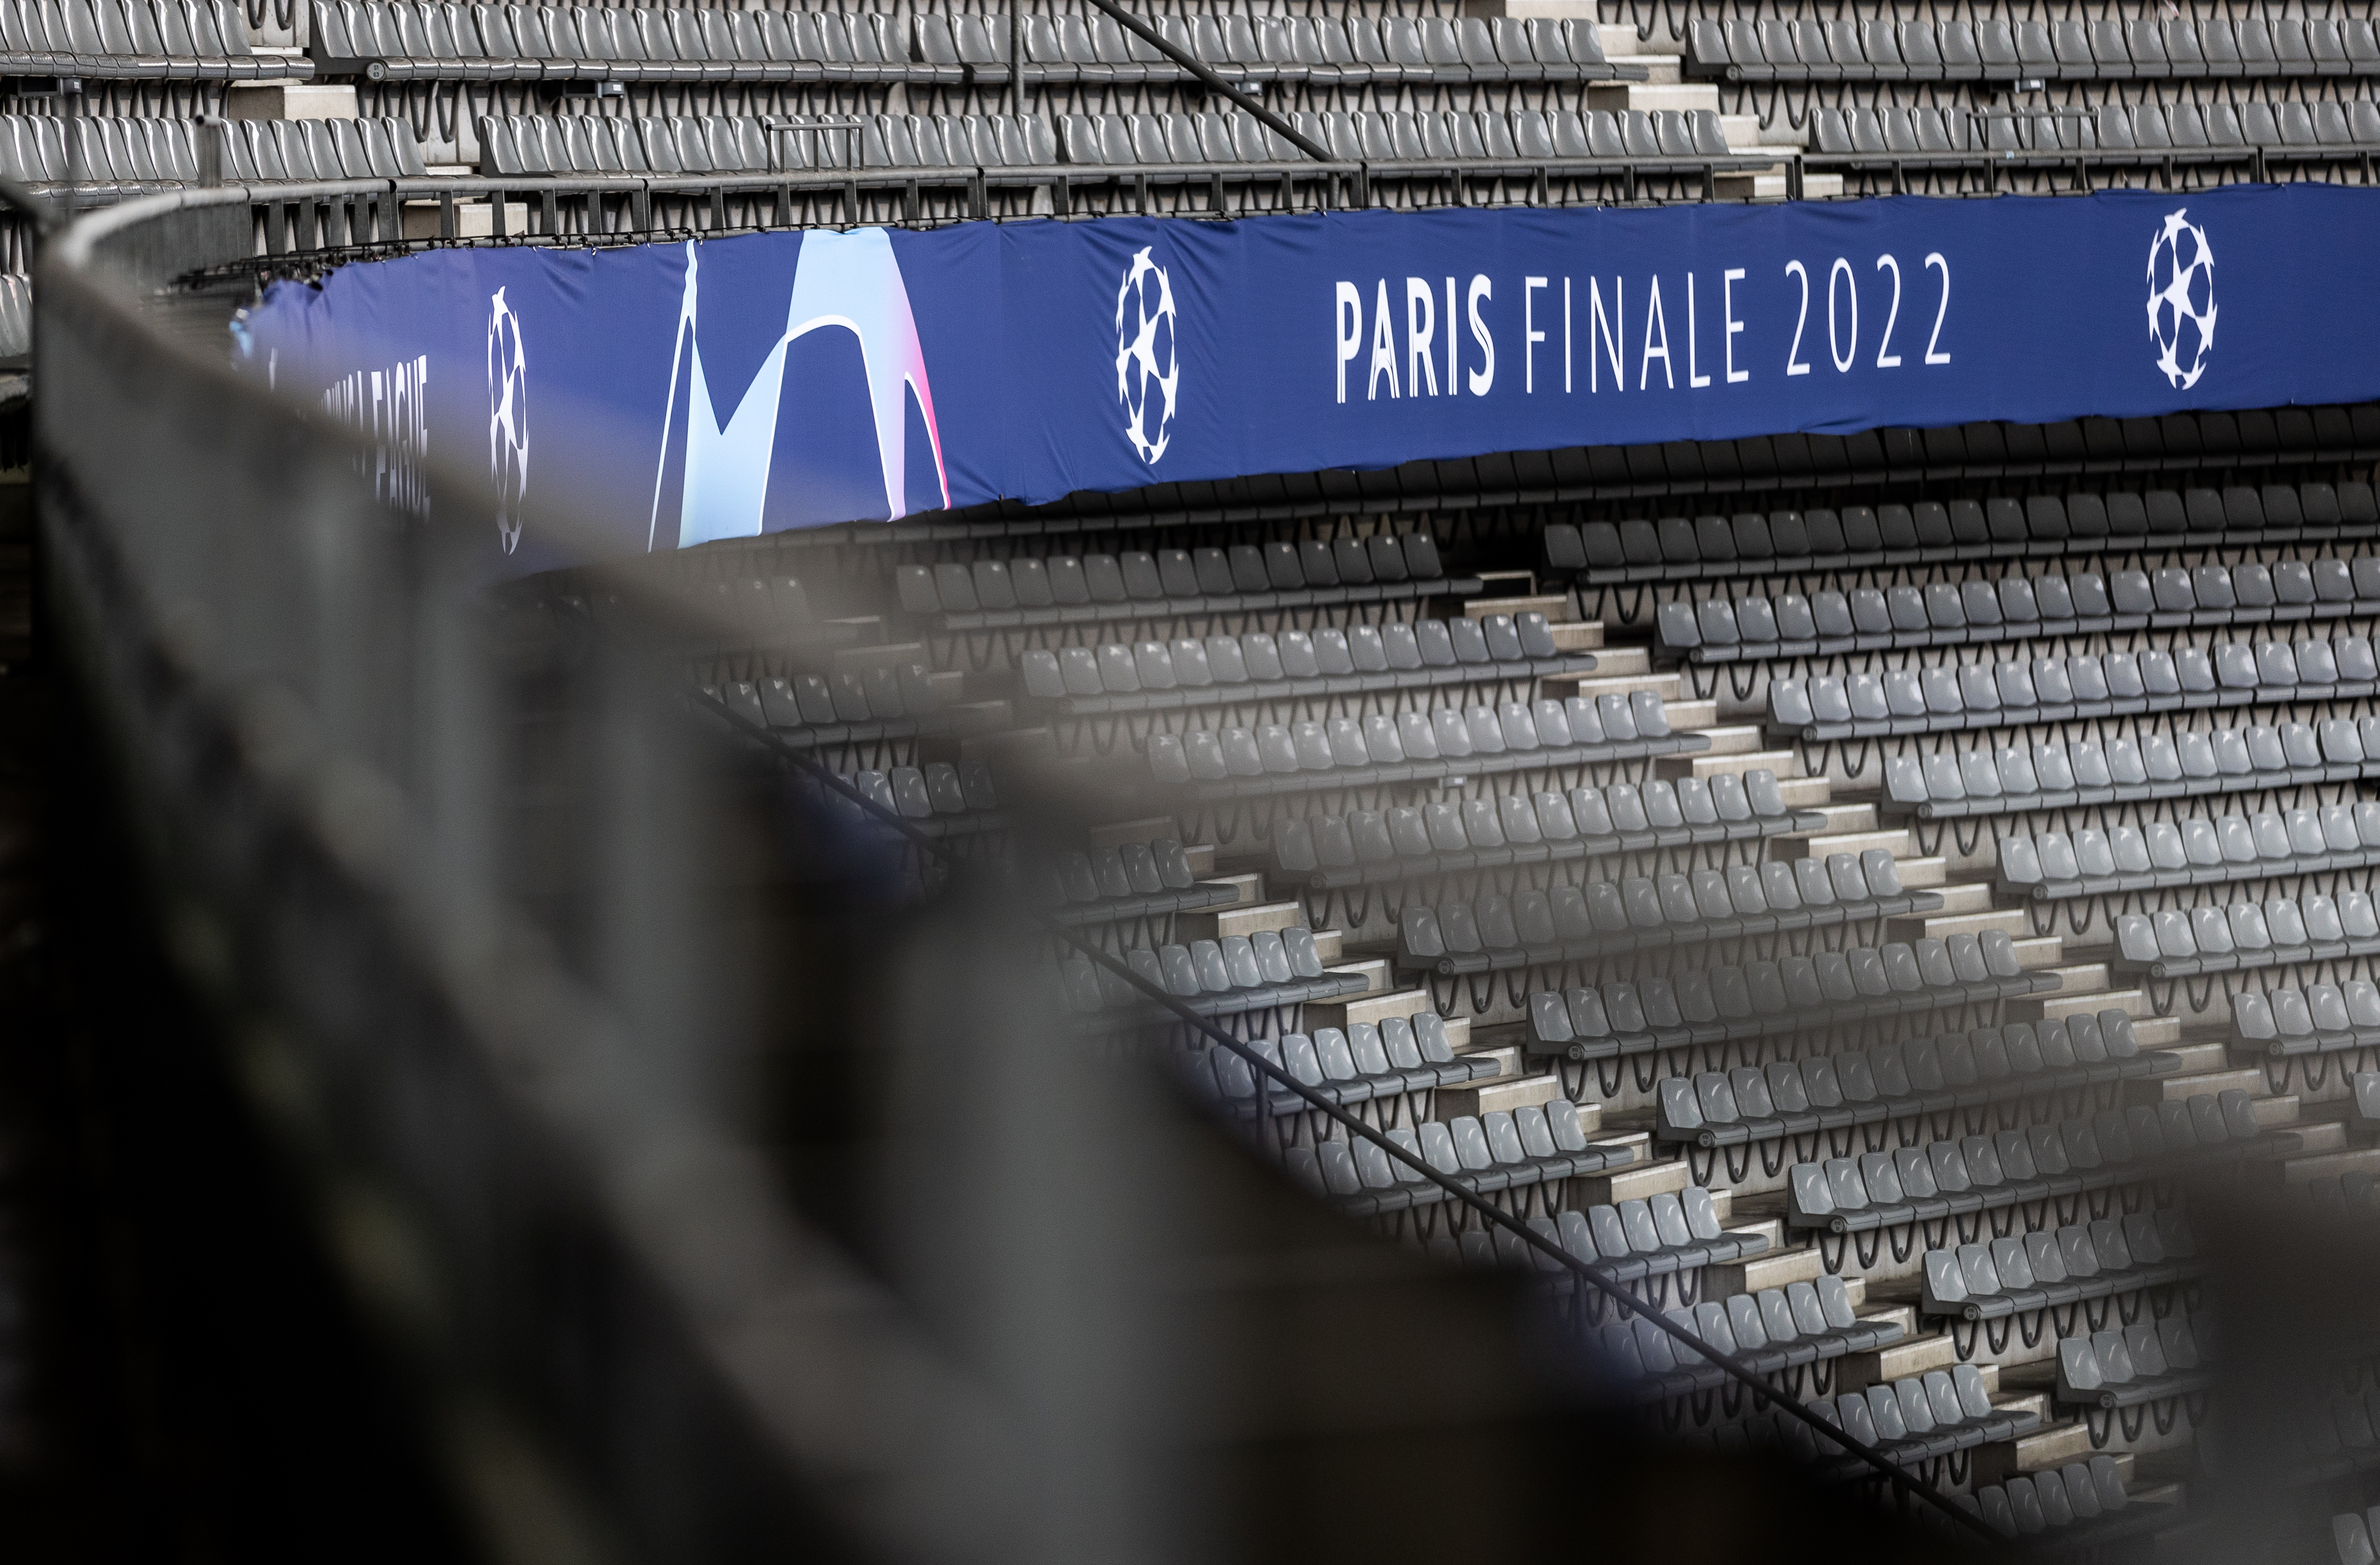 UEFA Champions League Final 2021/22 - Previews